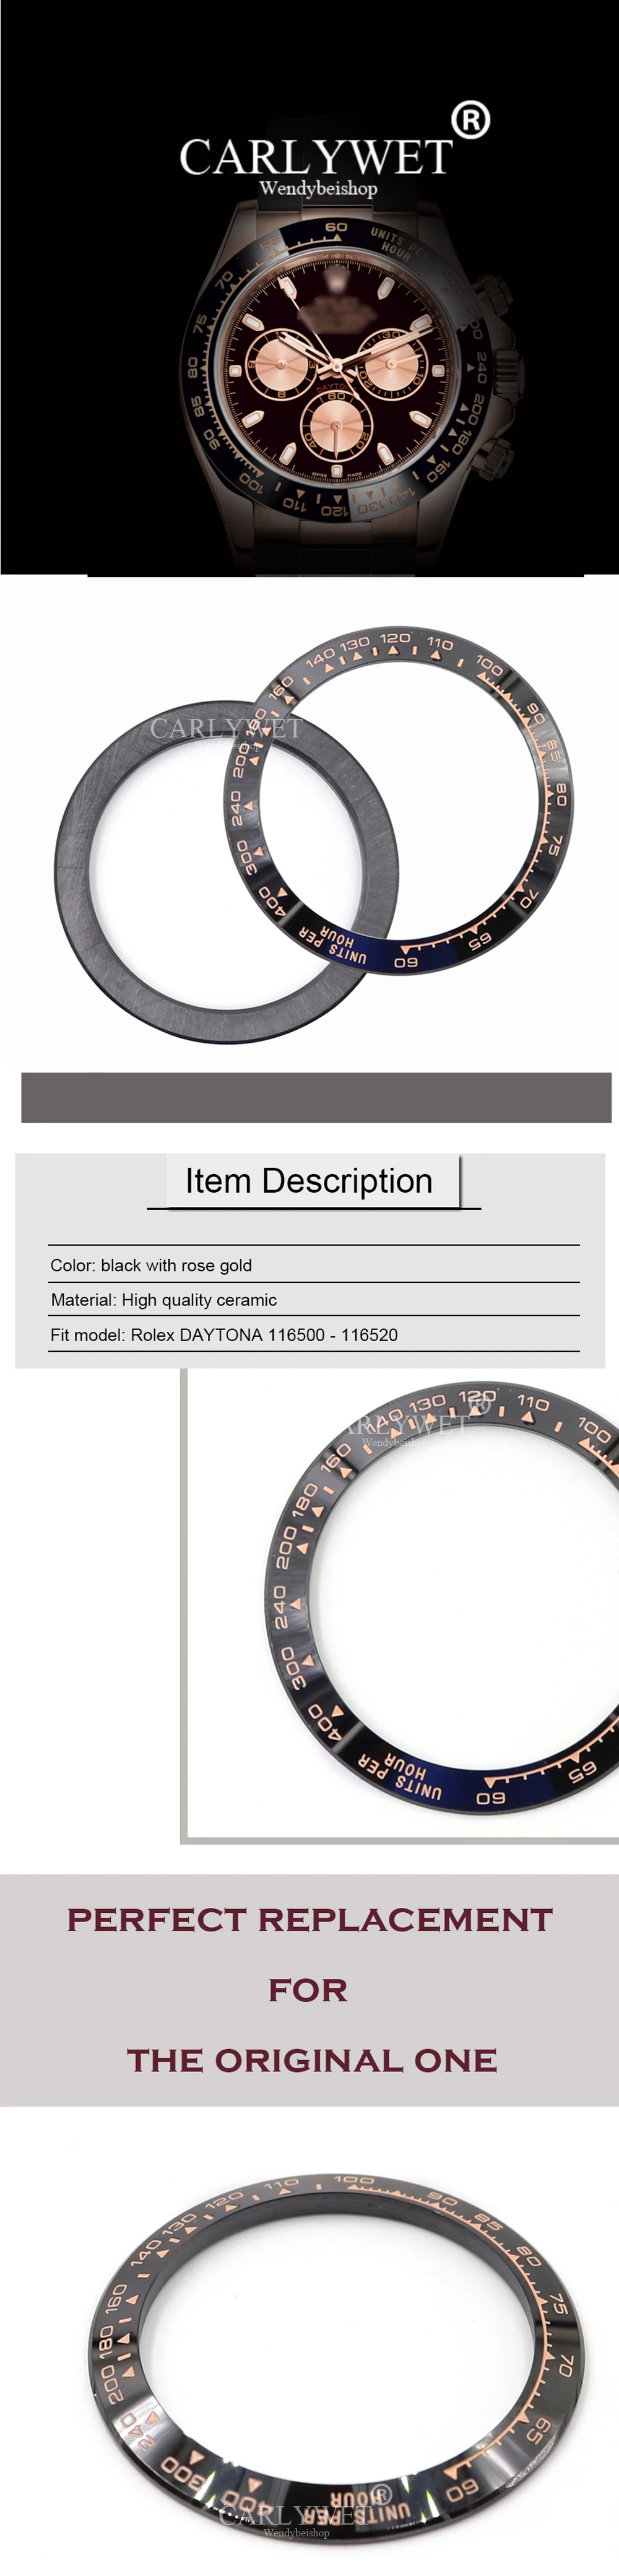 CARLYWET оптовая продажа DAYTONA Высокое качество чистый Керамика черный с розовым золотом письма 38,6 мм часы рамка для 116500-116520